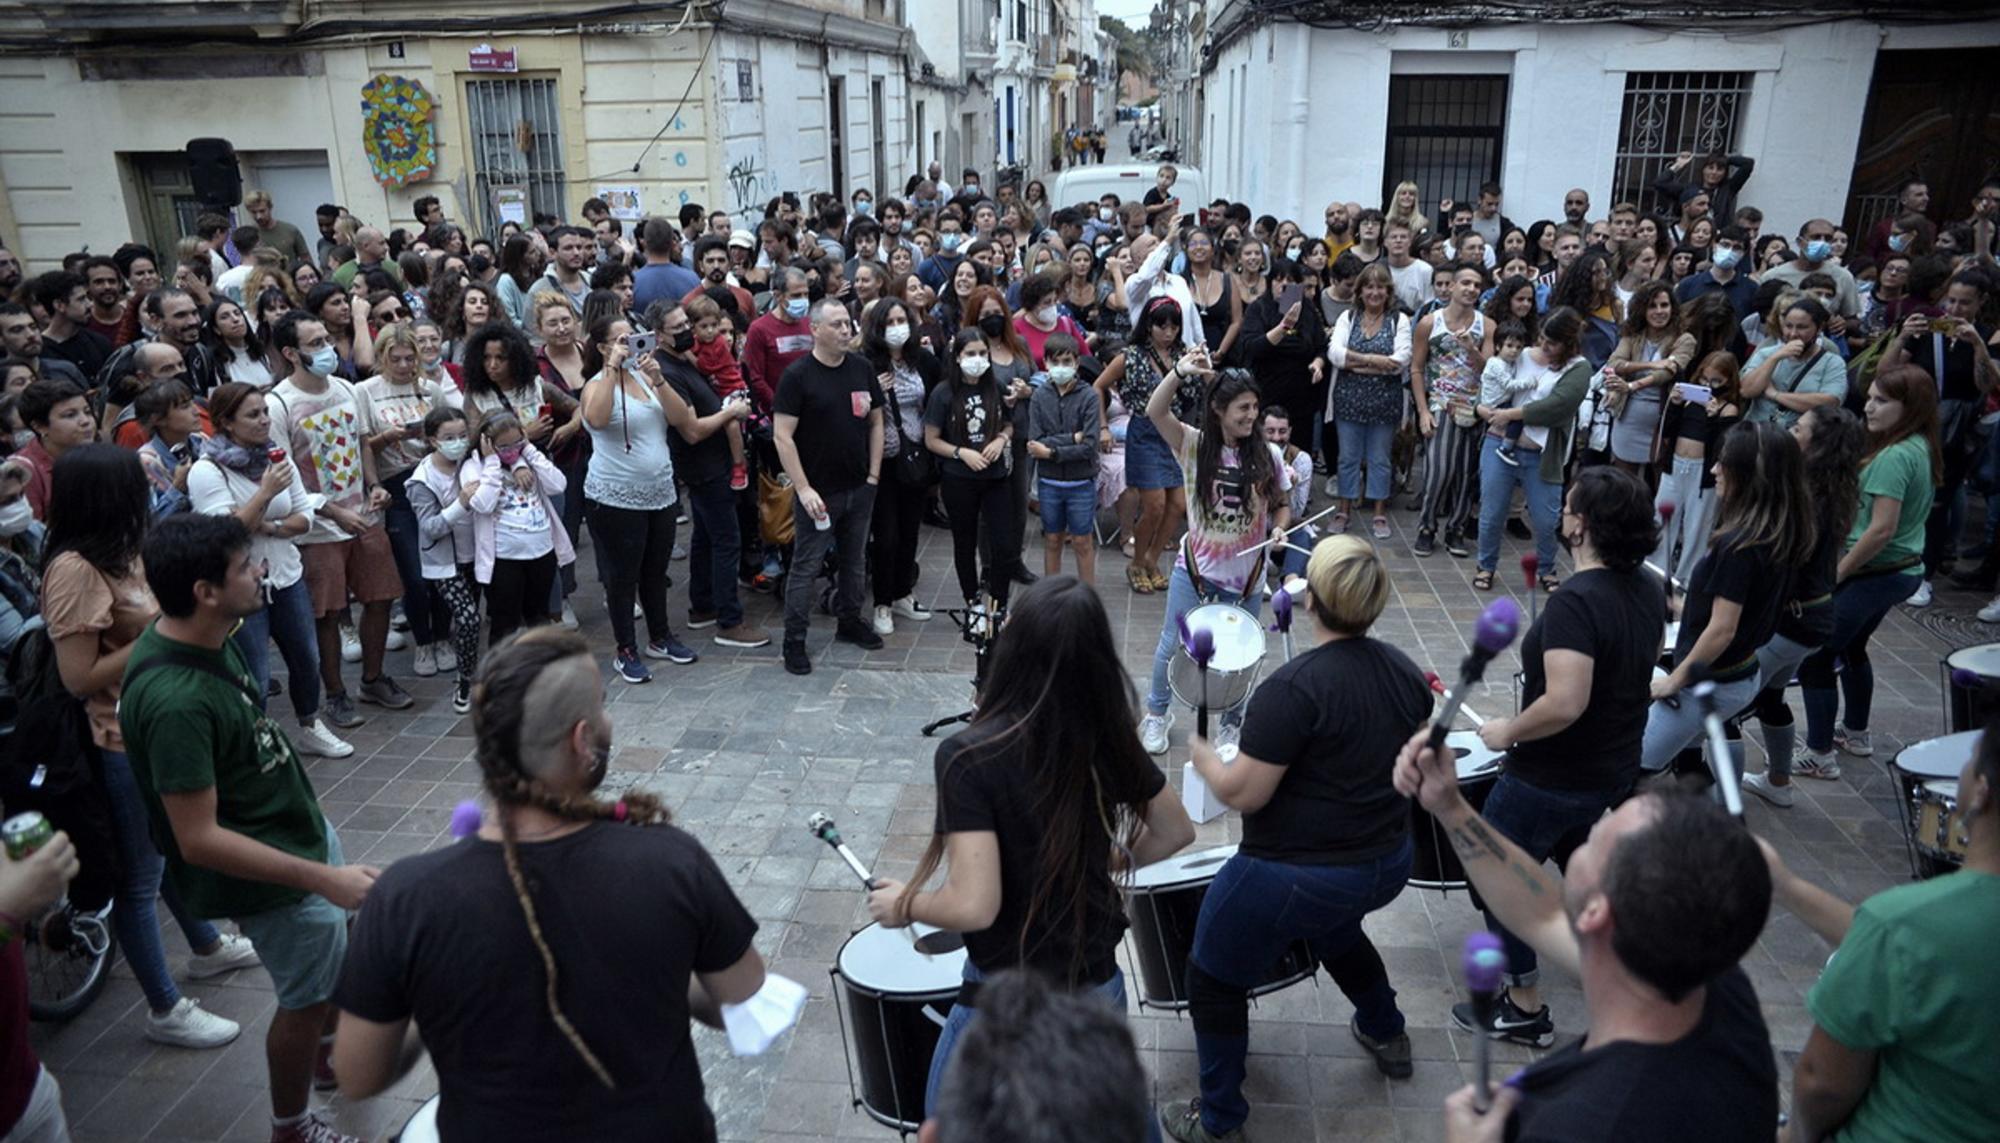 Festival ConFUSIÓN, arte y música en comunidad en el barrio valenciano de Benimaclet 4